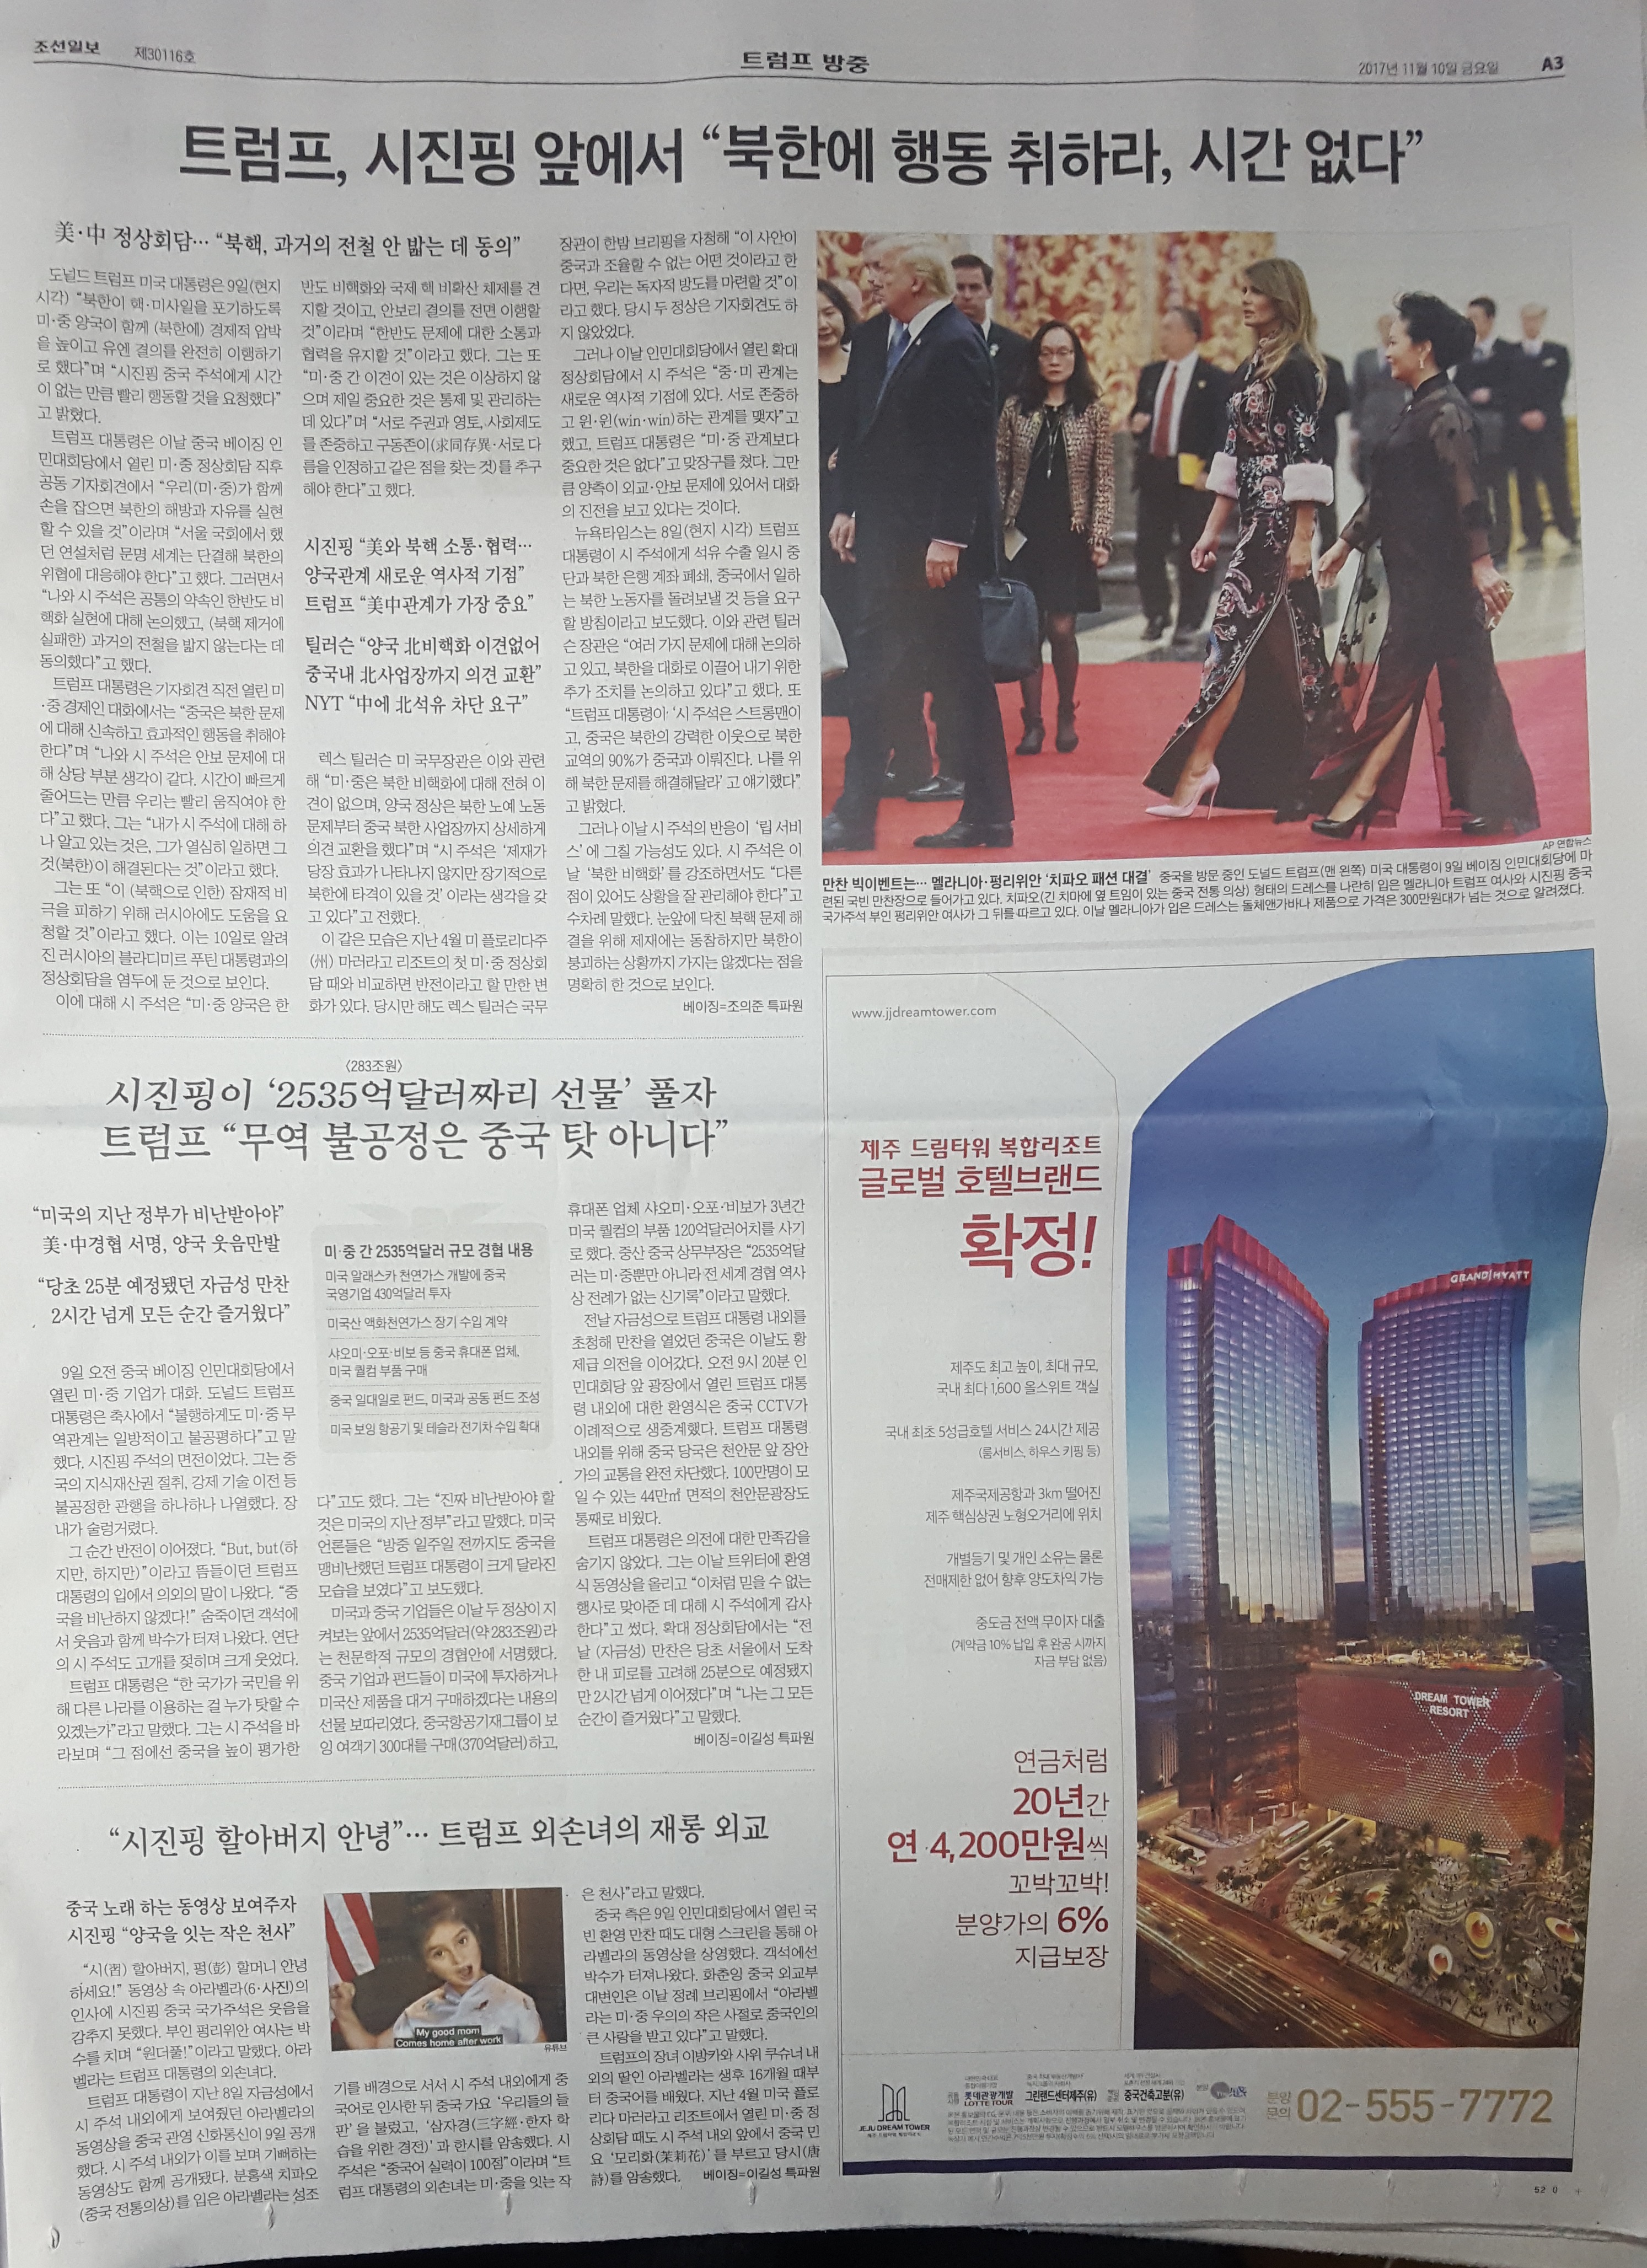 11월 10일 조선일보 A3 제주 드림타워 복합리조트 - 9단21.jpg